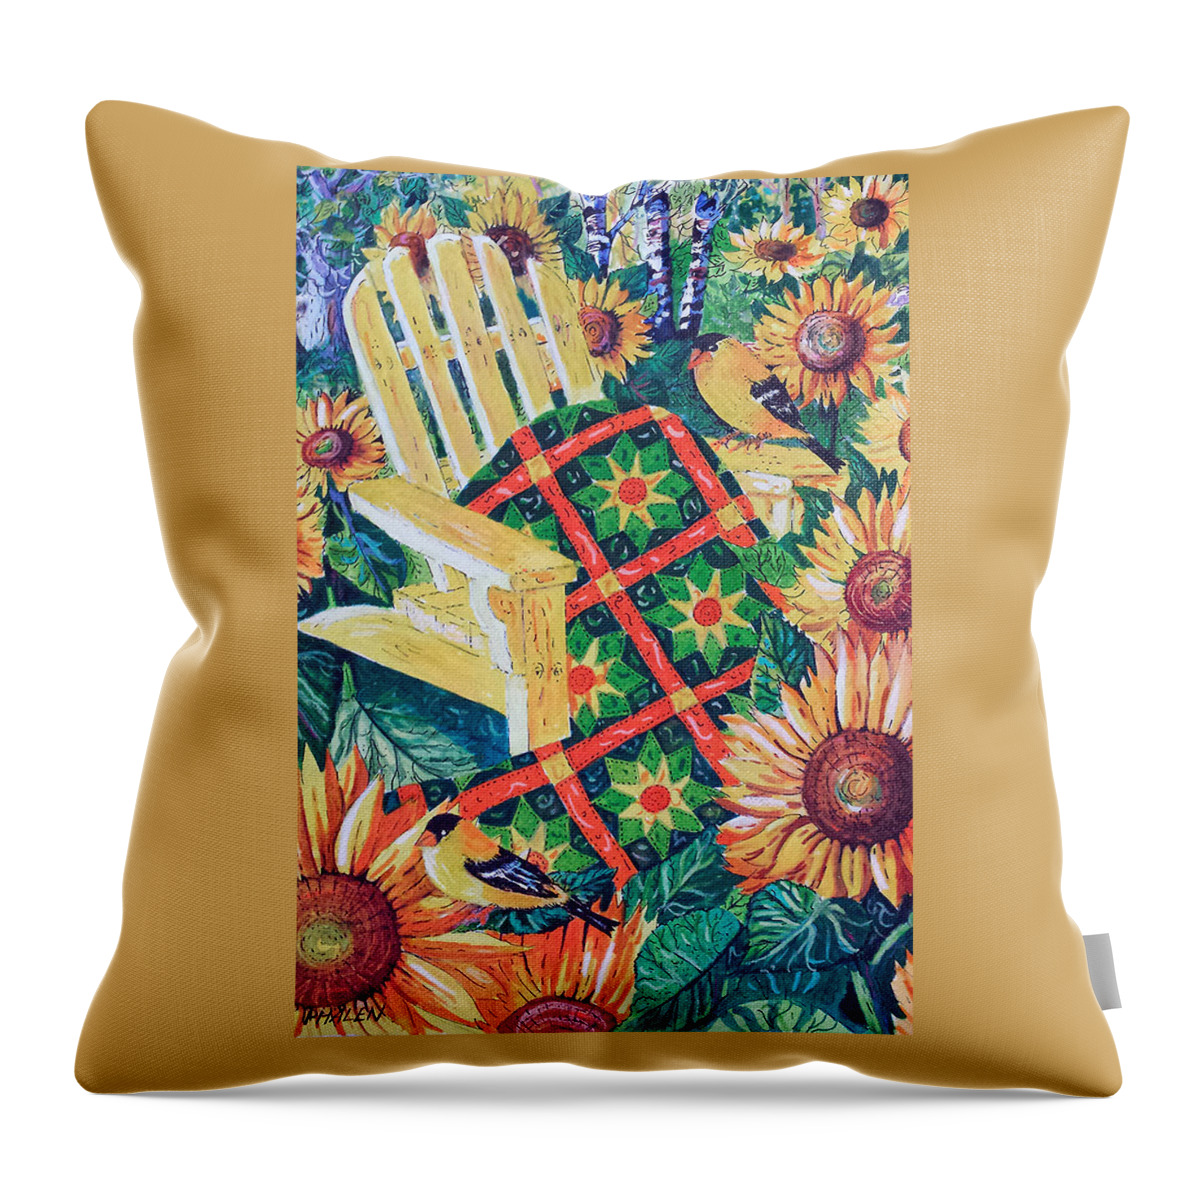 August Sunflowers And Quilt Throw Pillow featuring the painting August Sunflowers and Quilt by Diane Phalen